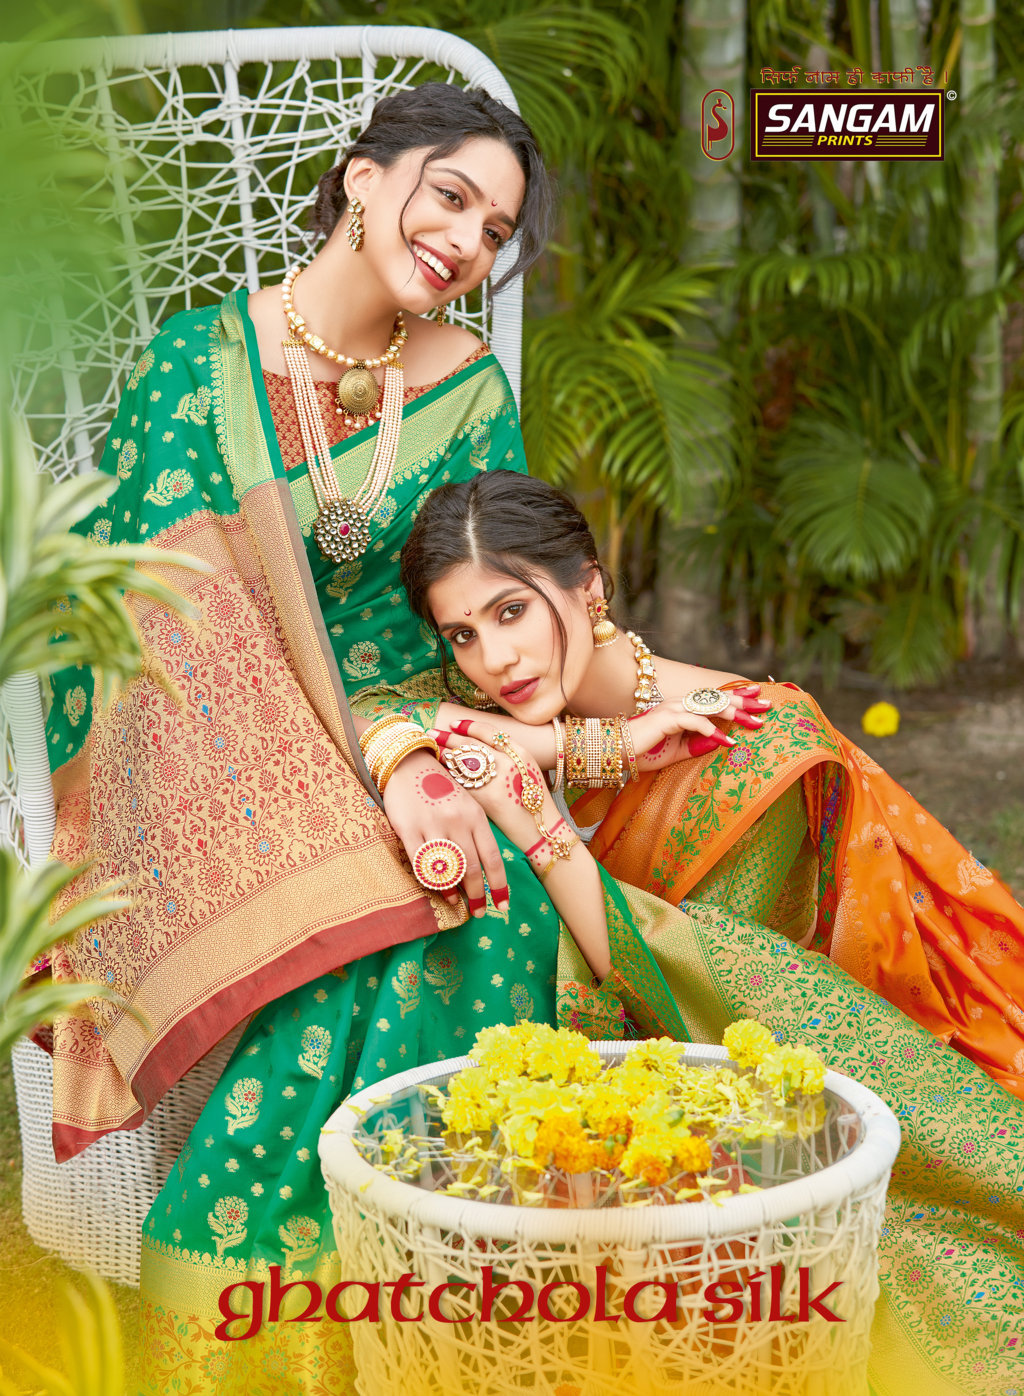 Sangam Presents Ghatchola Silk Banarasi Silk Sarees